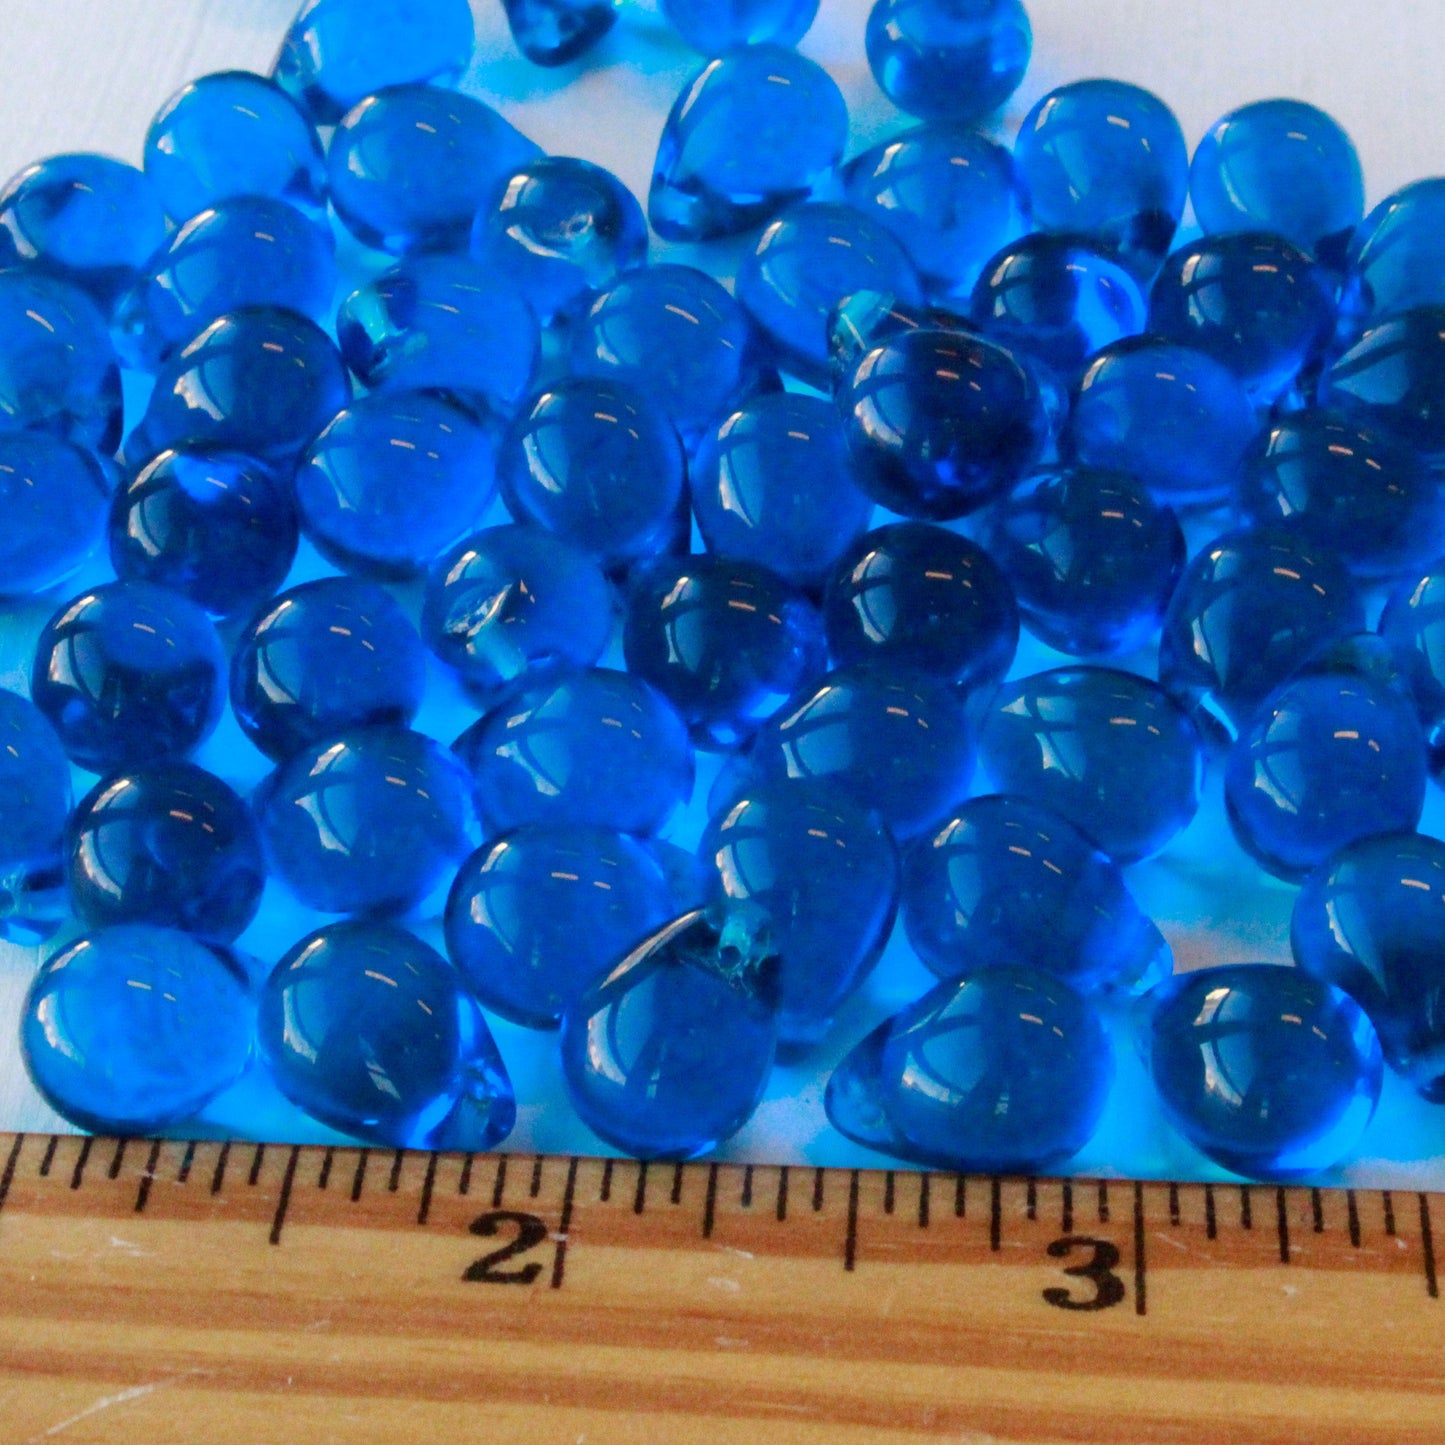 10x14mm Glass Teardrop Beads - Deep Azure Blue